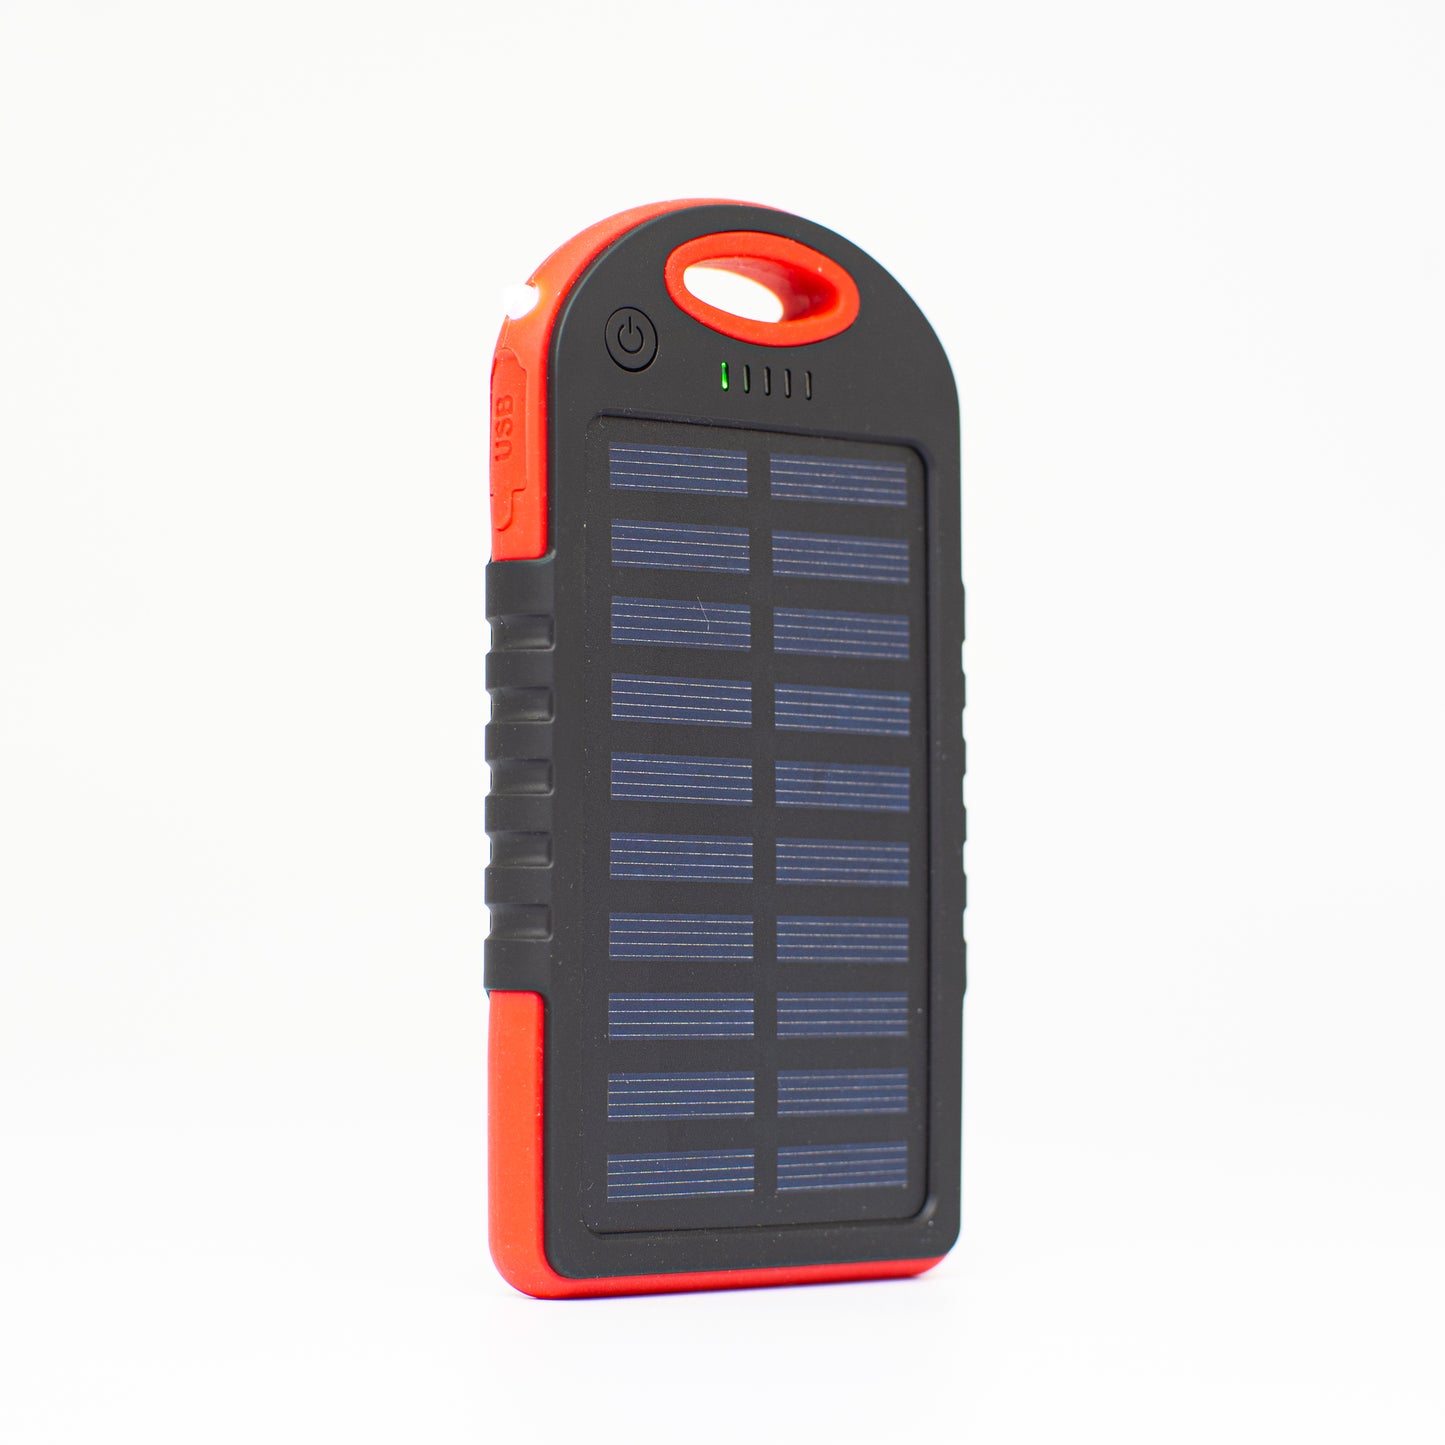 Batterie externe solaire Panneau solaire haut de gamme avec batterie externe, lampe et 2 sorties USB - charge directement avec le soleil pour une alimentation de secours